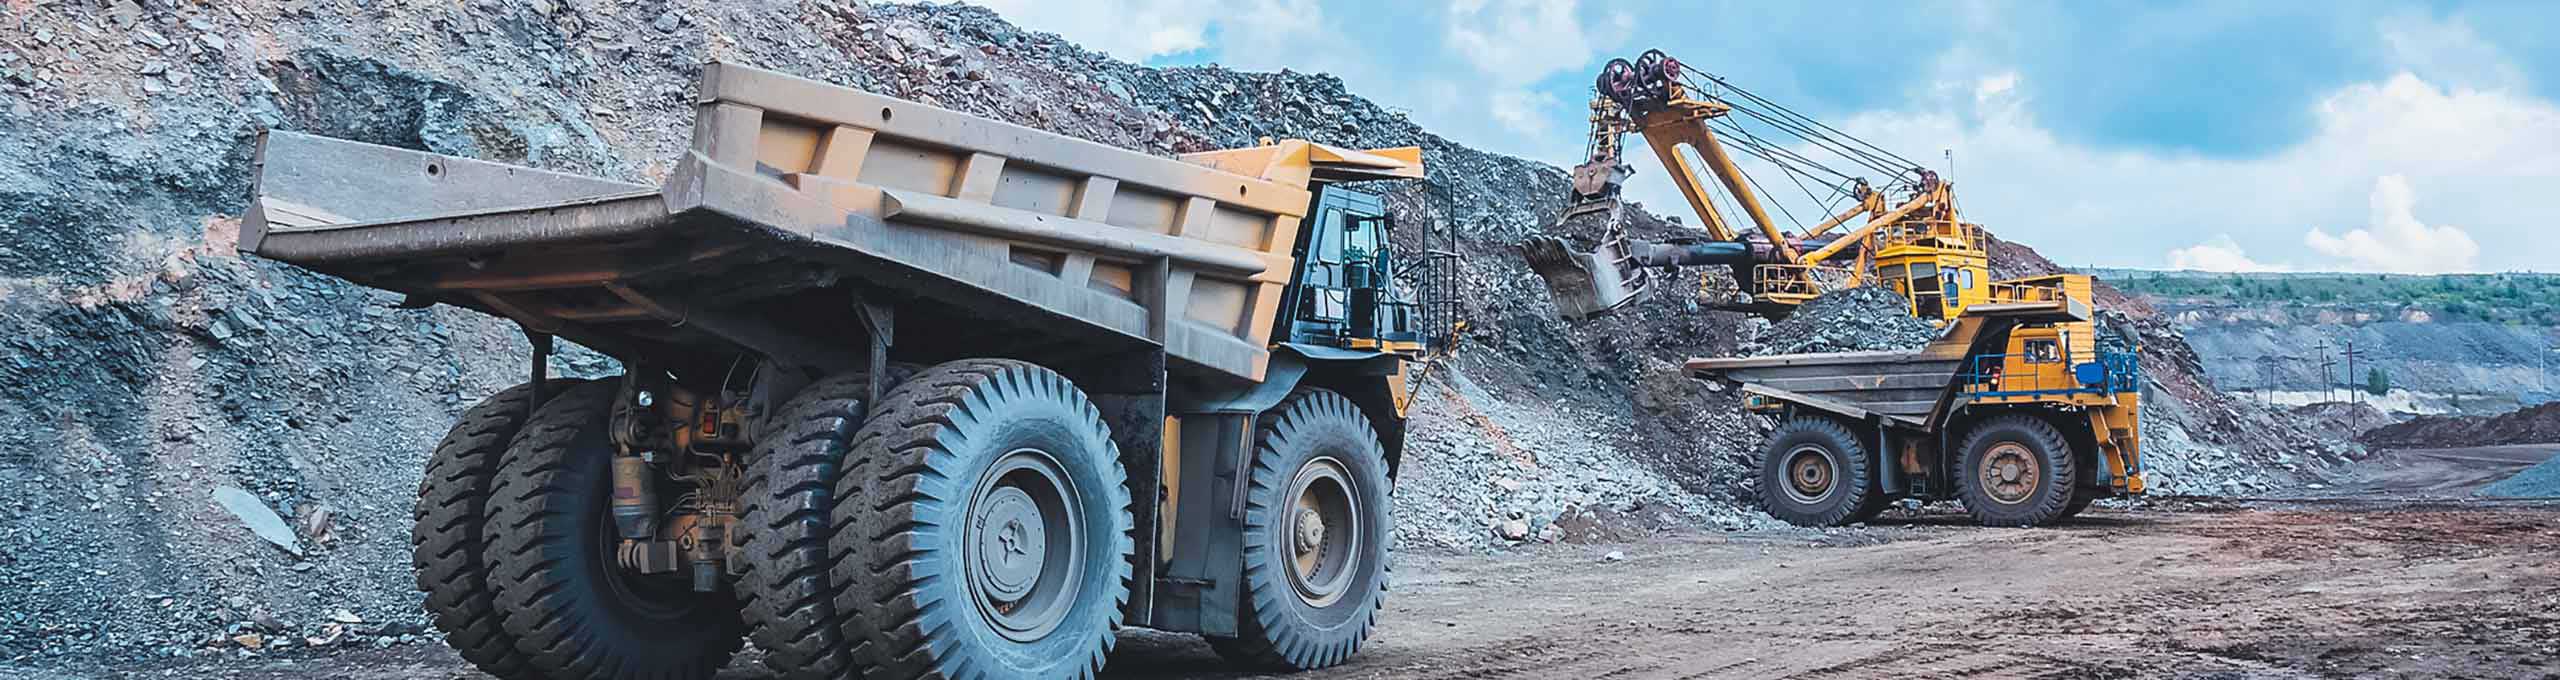 Dans une mine à ciel ouvert, une grosse excavatrice jaune extrait du minerai de fer et charge un camion